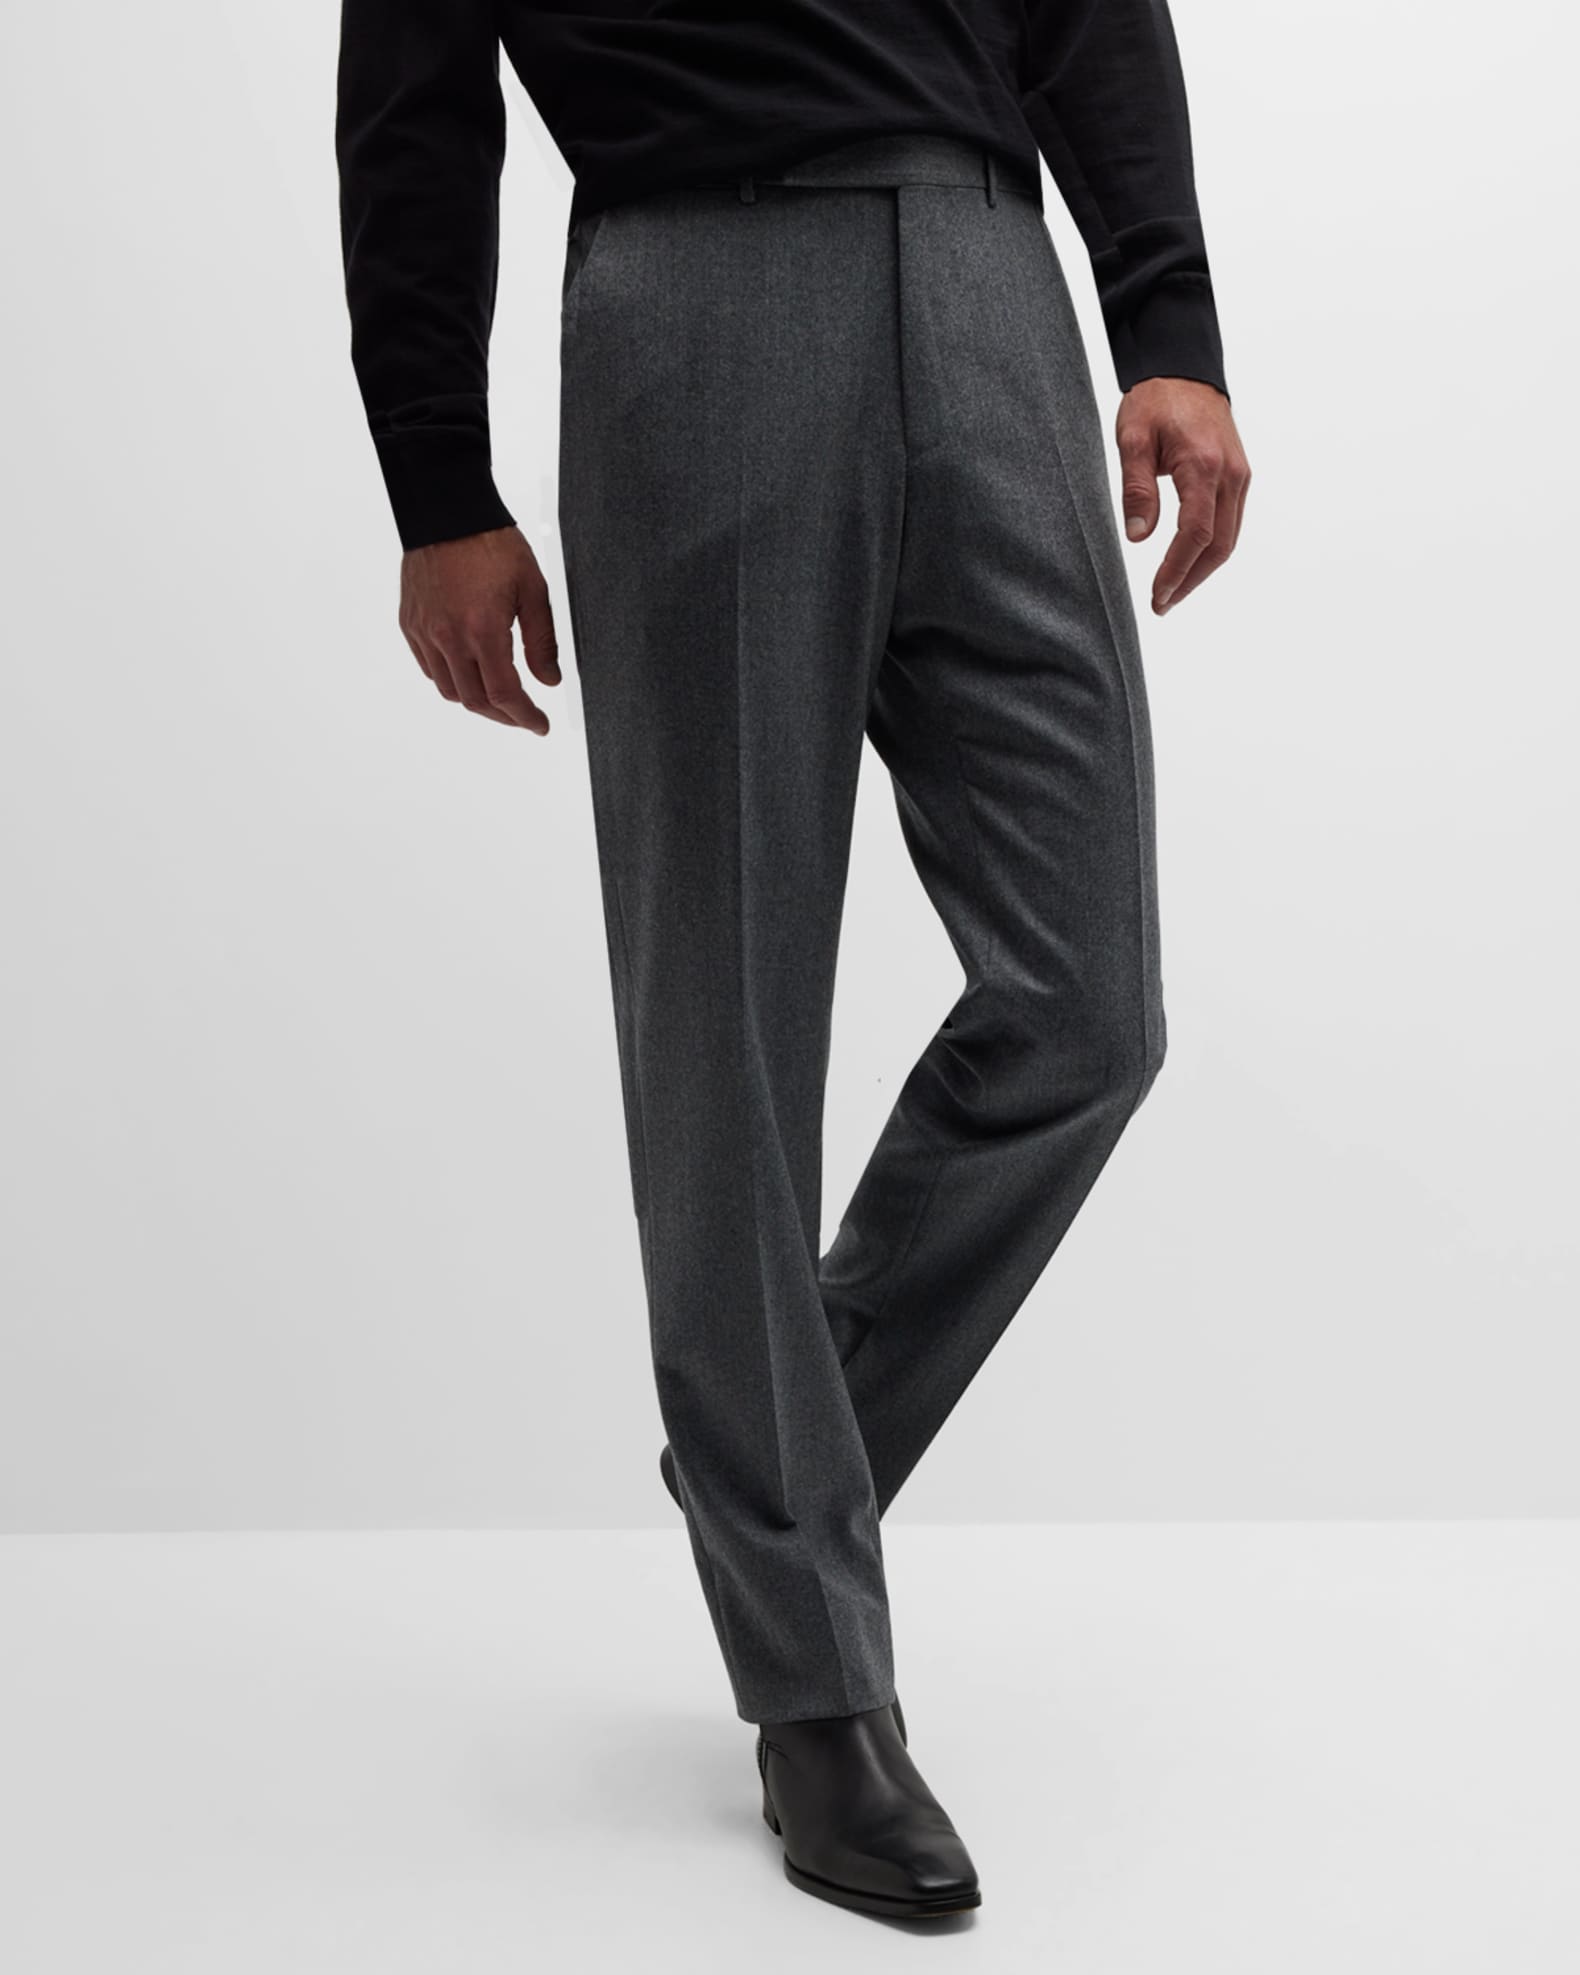 ZEGNA Men's Wool Flannel Pants | Neiman Marcus